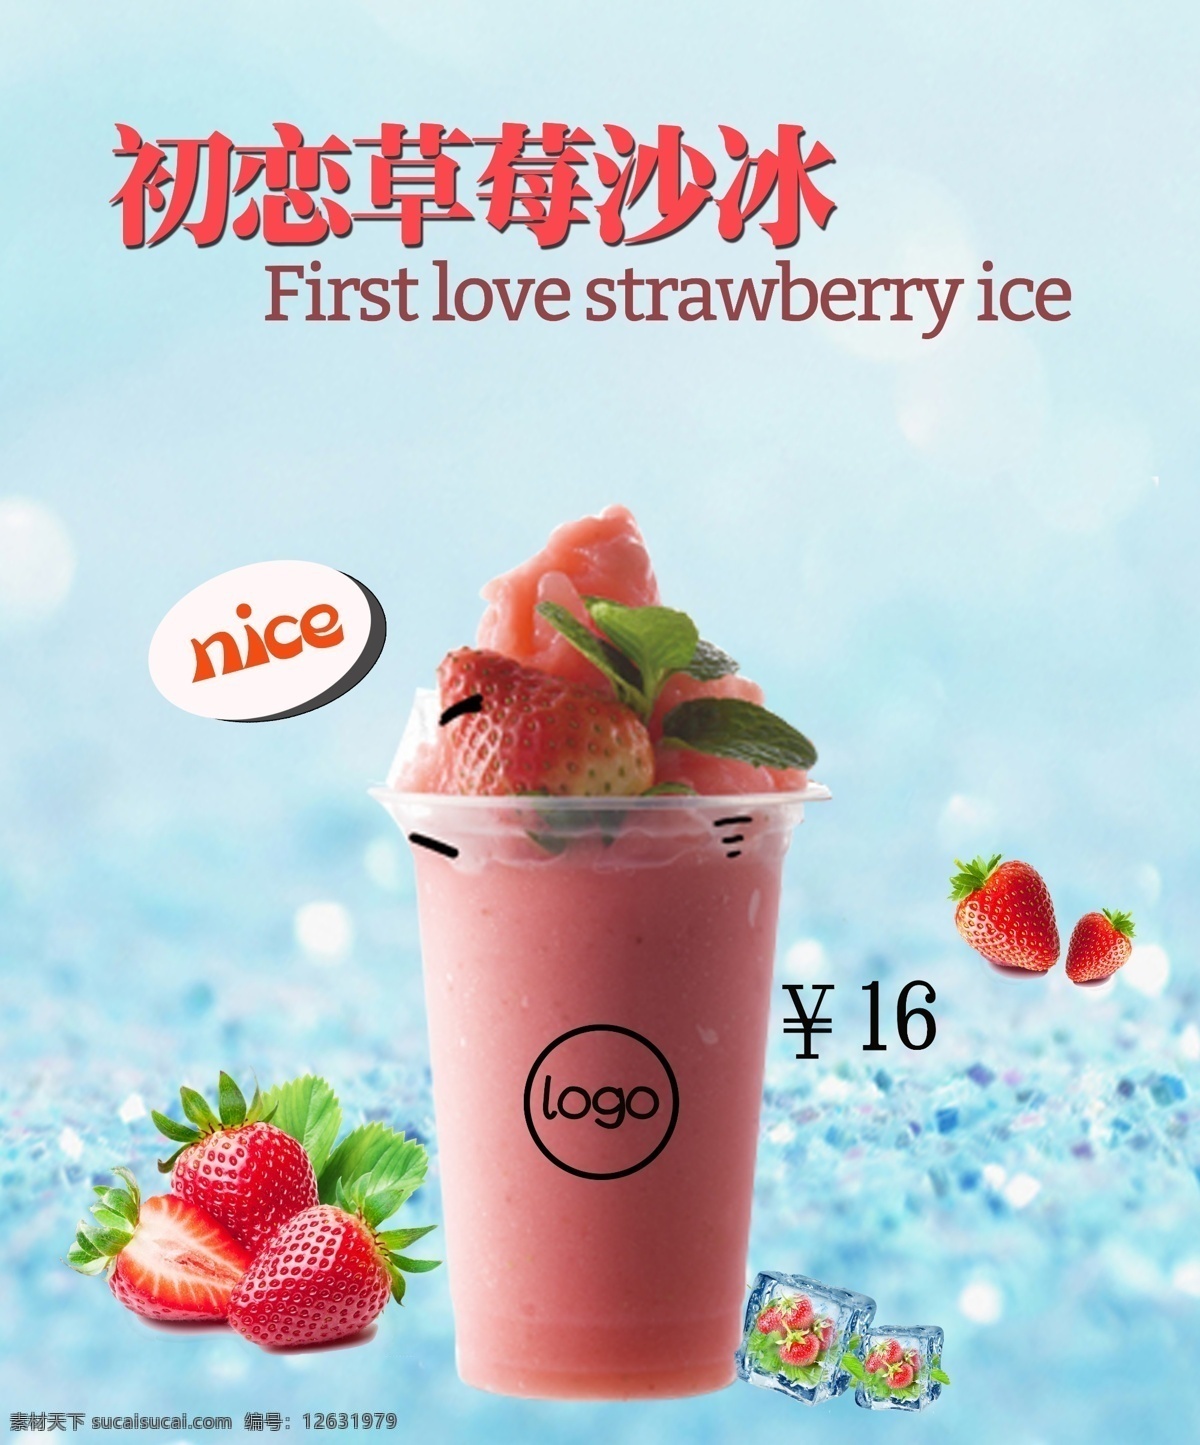 奶茶 奶茶店 草莓 草莓沙冰 冰沙 草莓口味 饮品 喝的 展板 产品灯箱 灯箱 室内广告设计